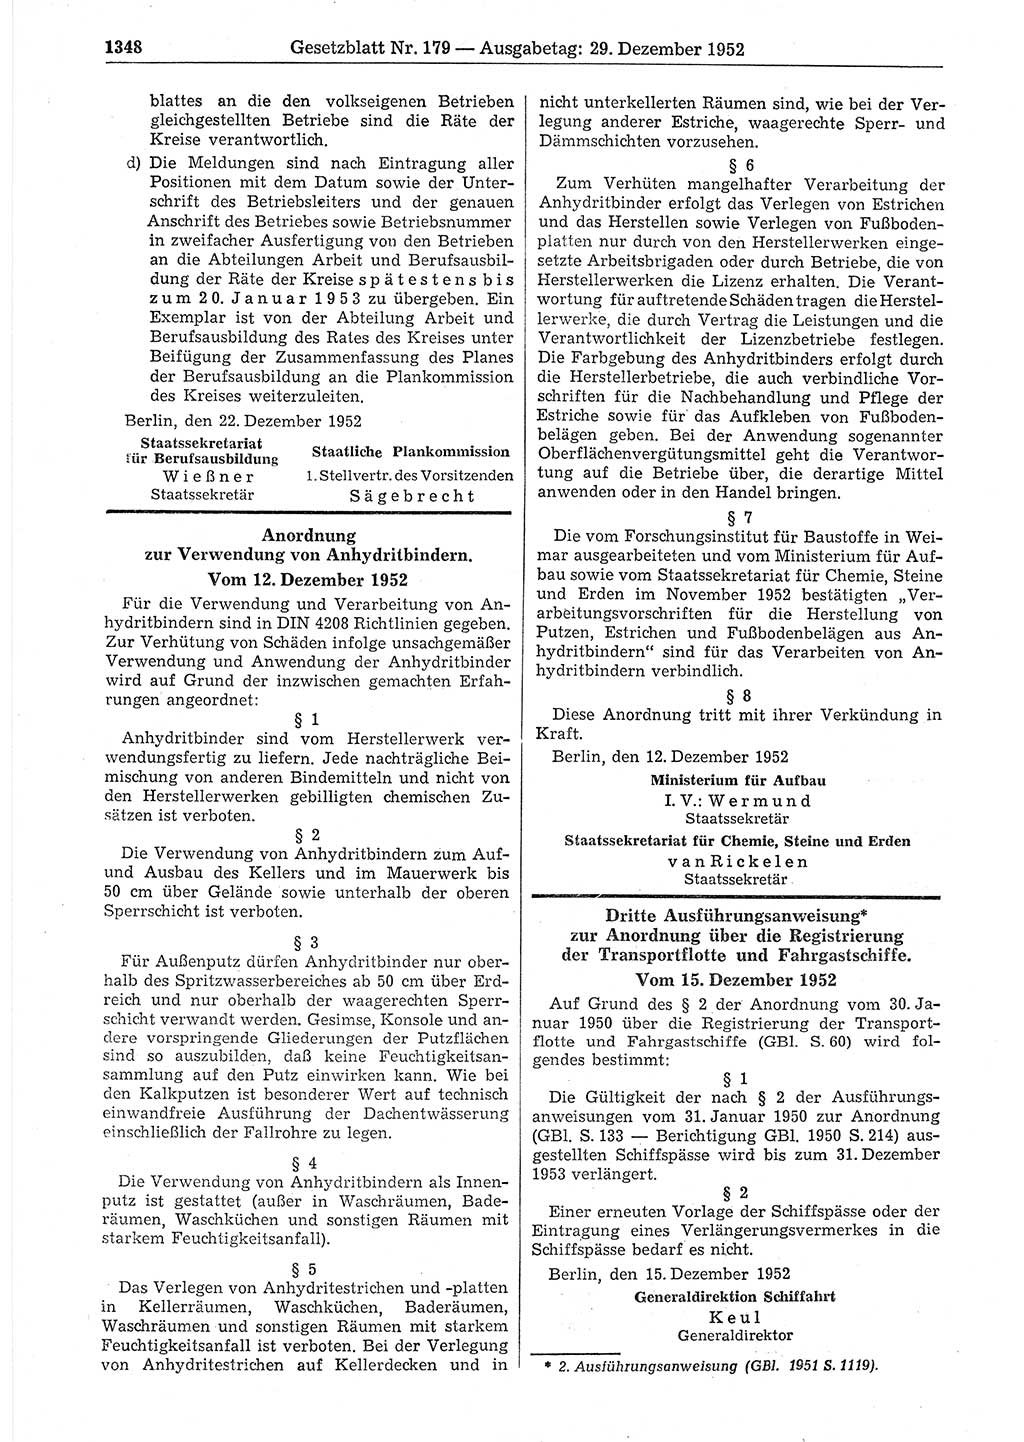 Gesetzblatt (GBl.) der Deutschen Demokratischen Republik (DDR) 1952, Seite 1348 (GBl. DDR 1952, S. 1348)